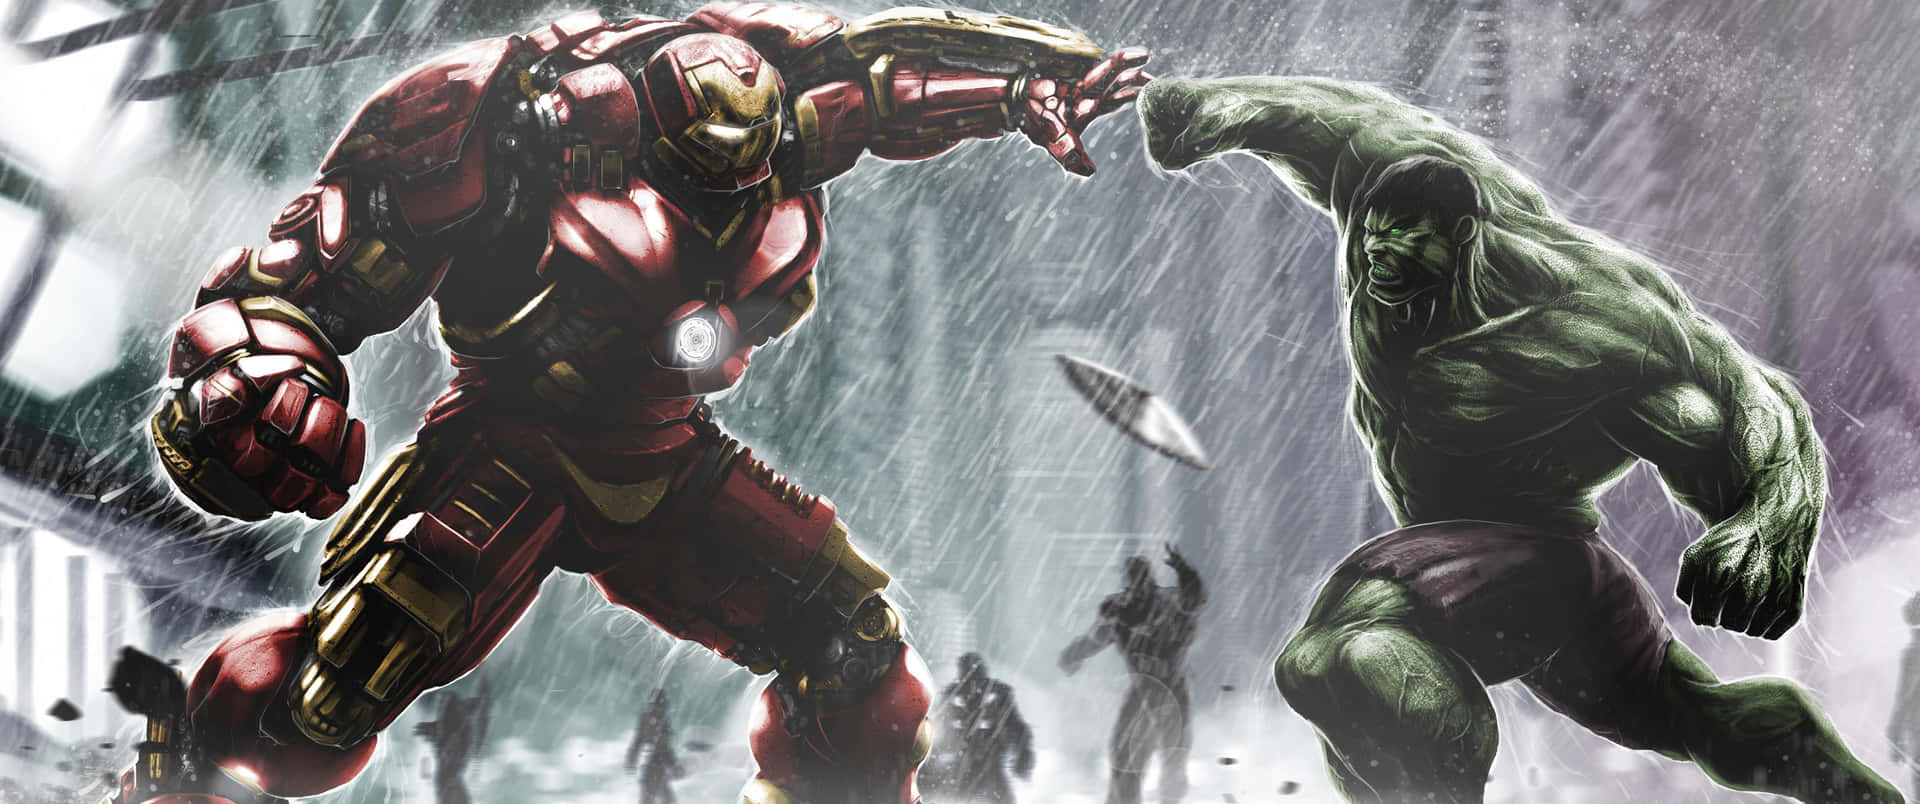 Hulkund Iron Man Kämpfen Im Regen.